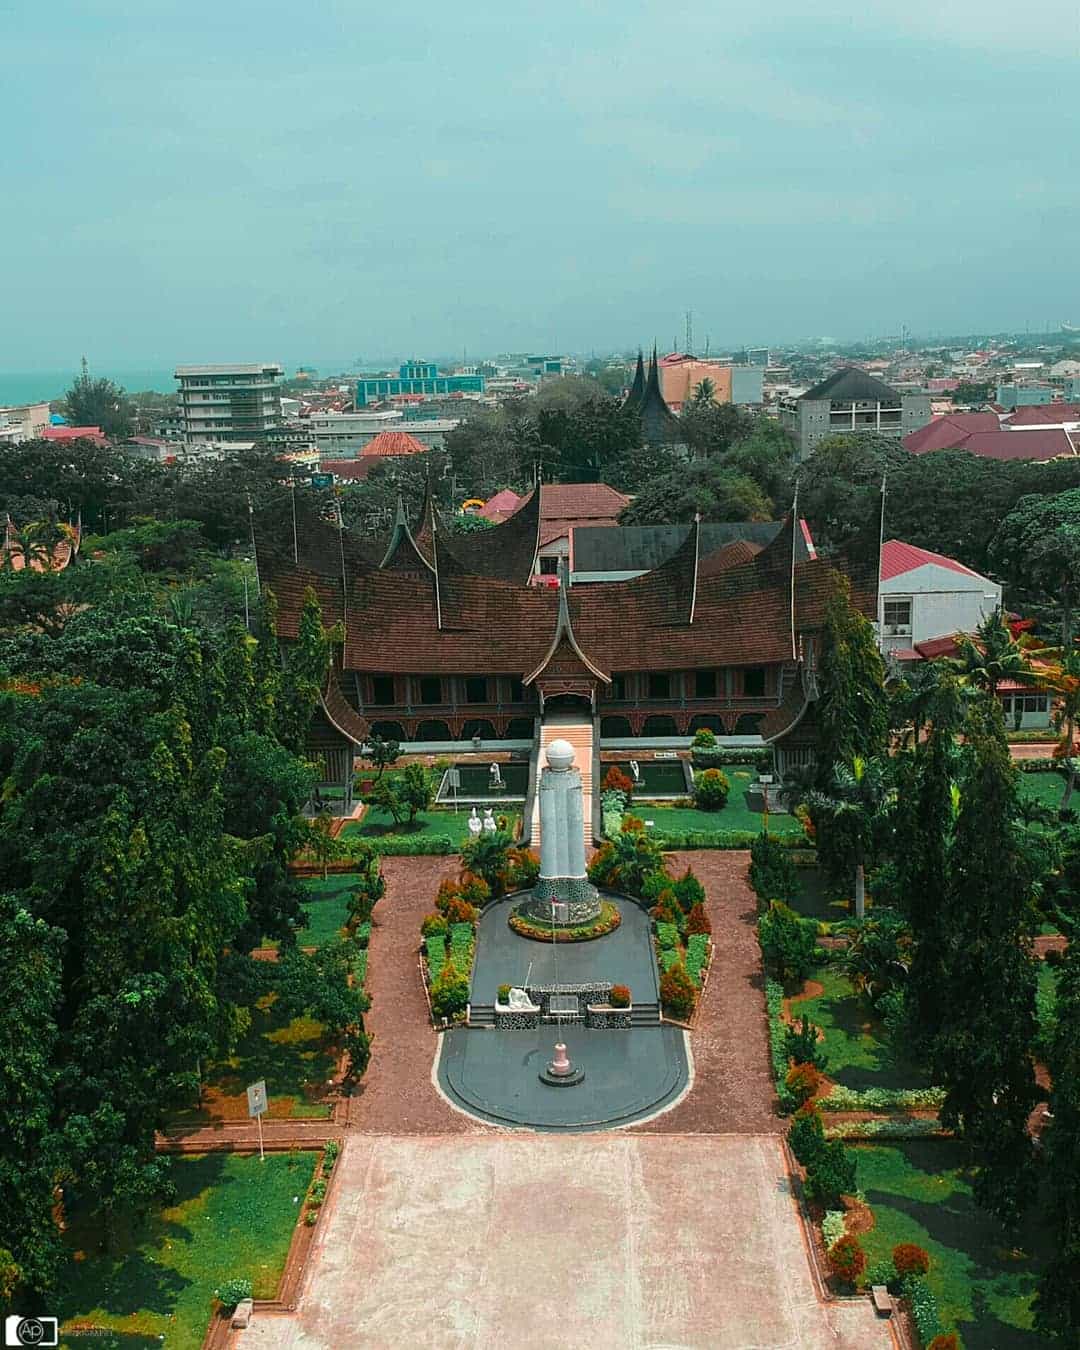 Museum Adityawarman Padang